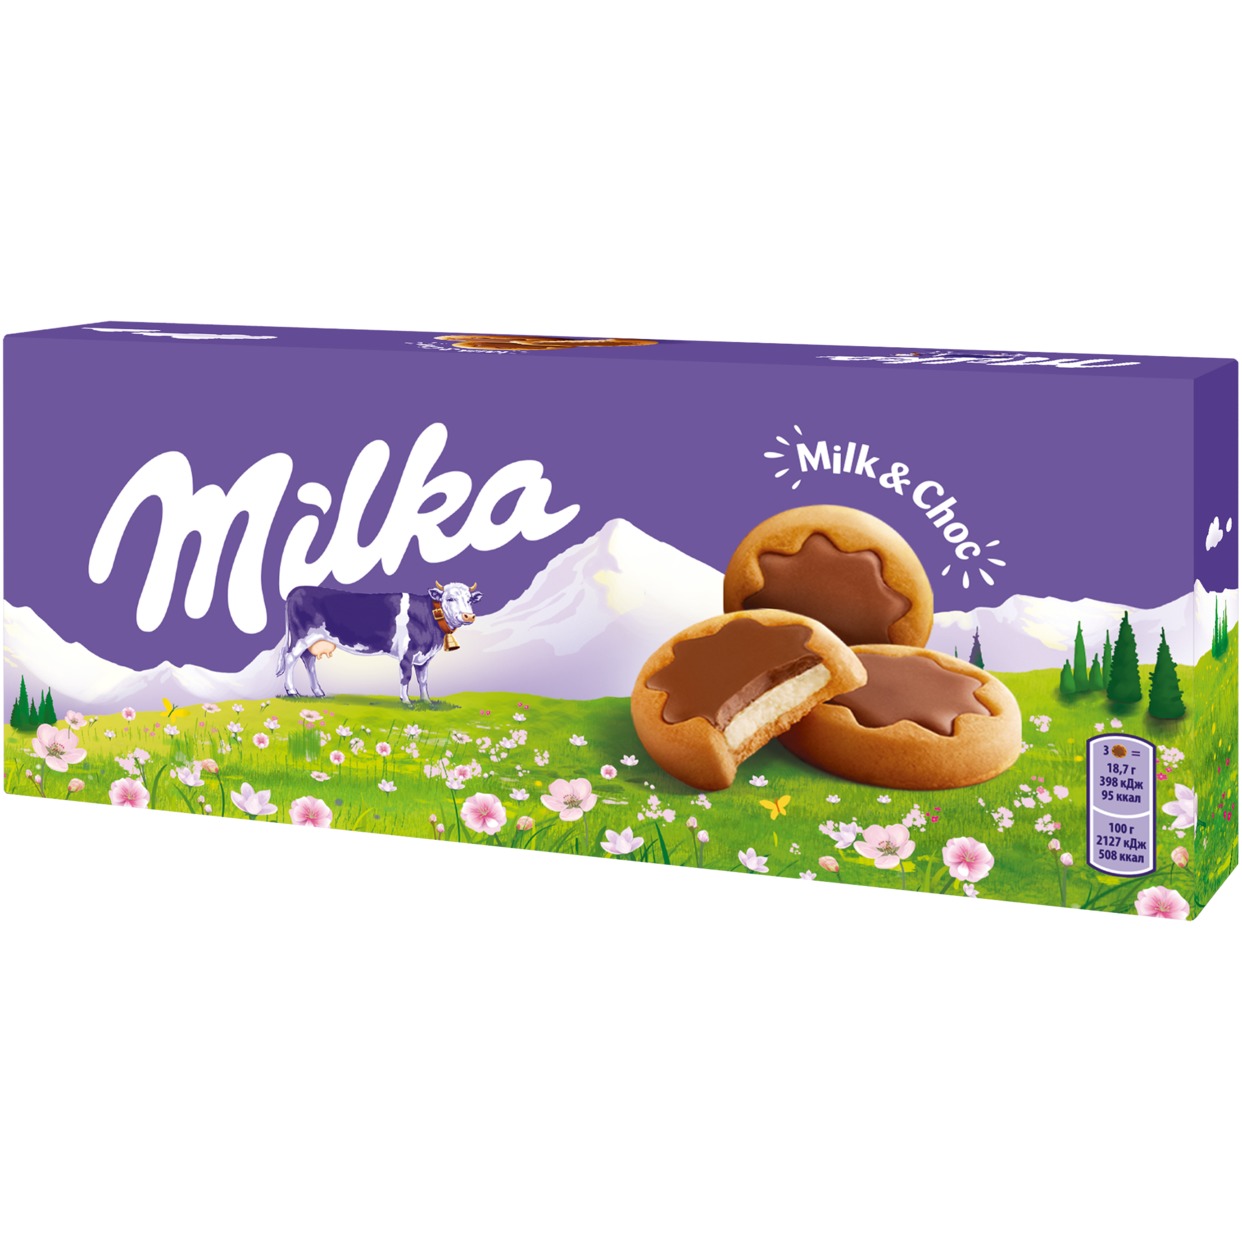 Печенье «Милка» с молочной начинкой, частично покрытое молочным шоколадом 187 г x 16 КР по акции в Пятерочке